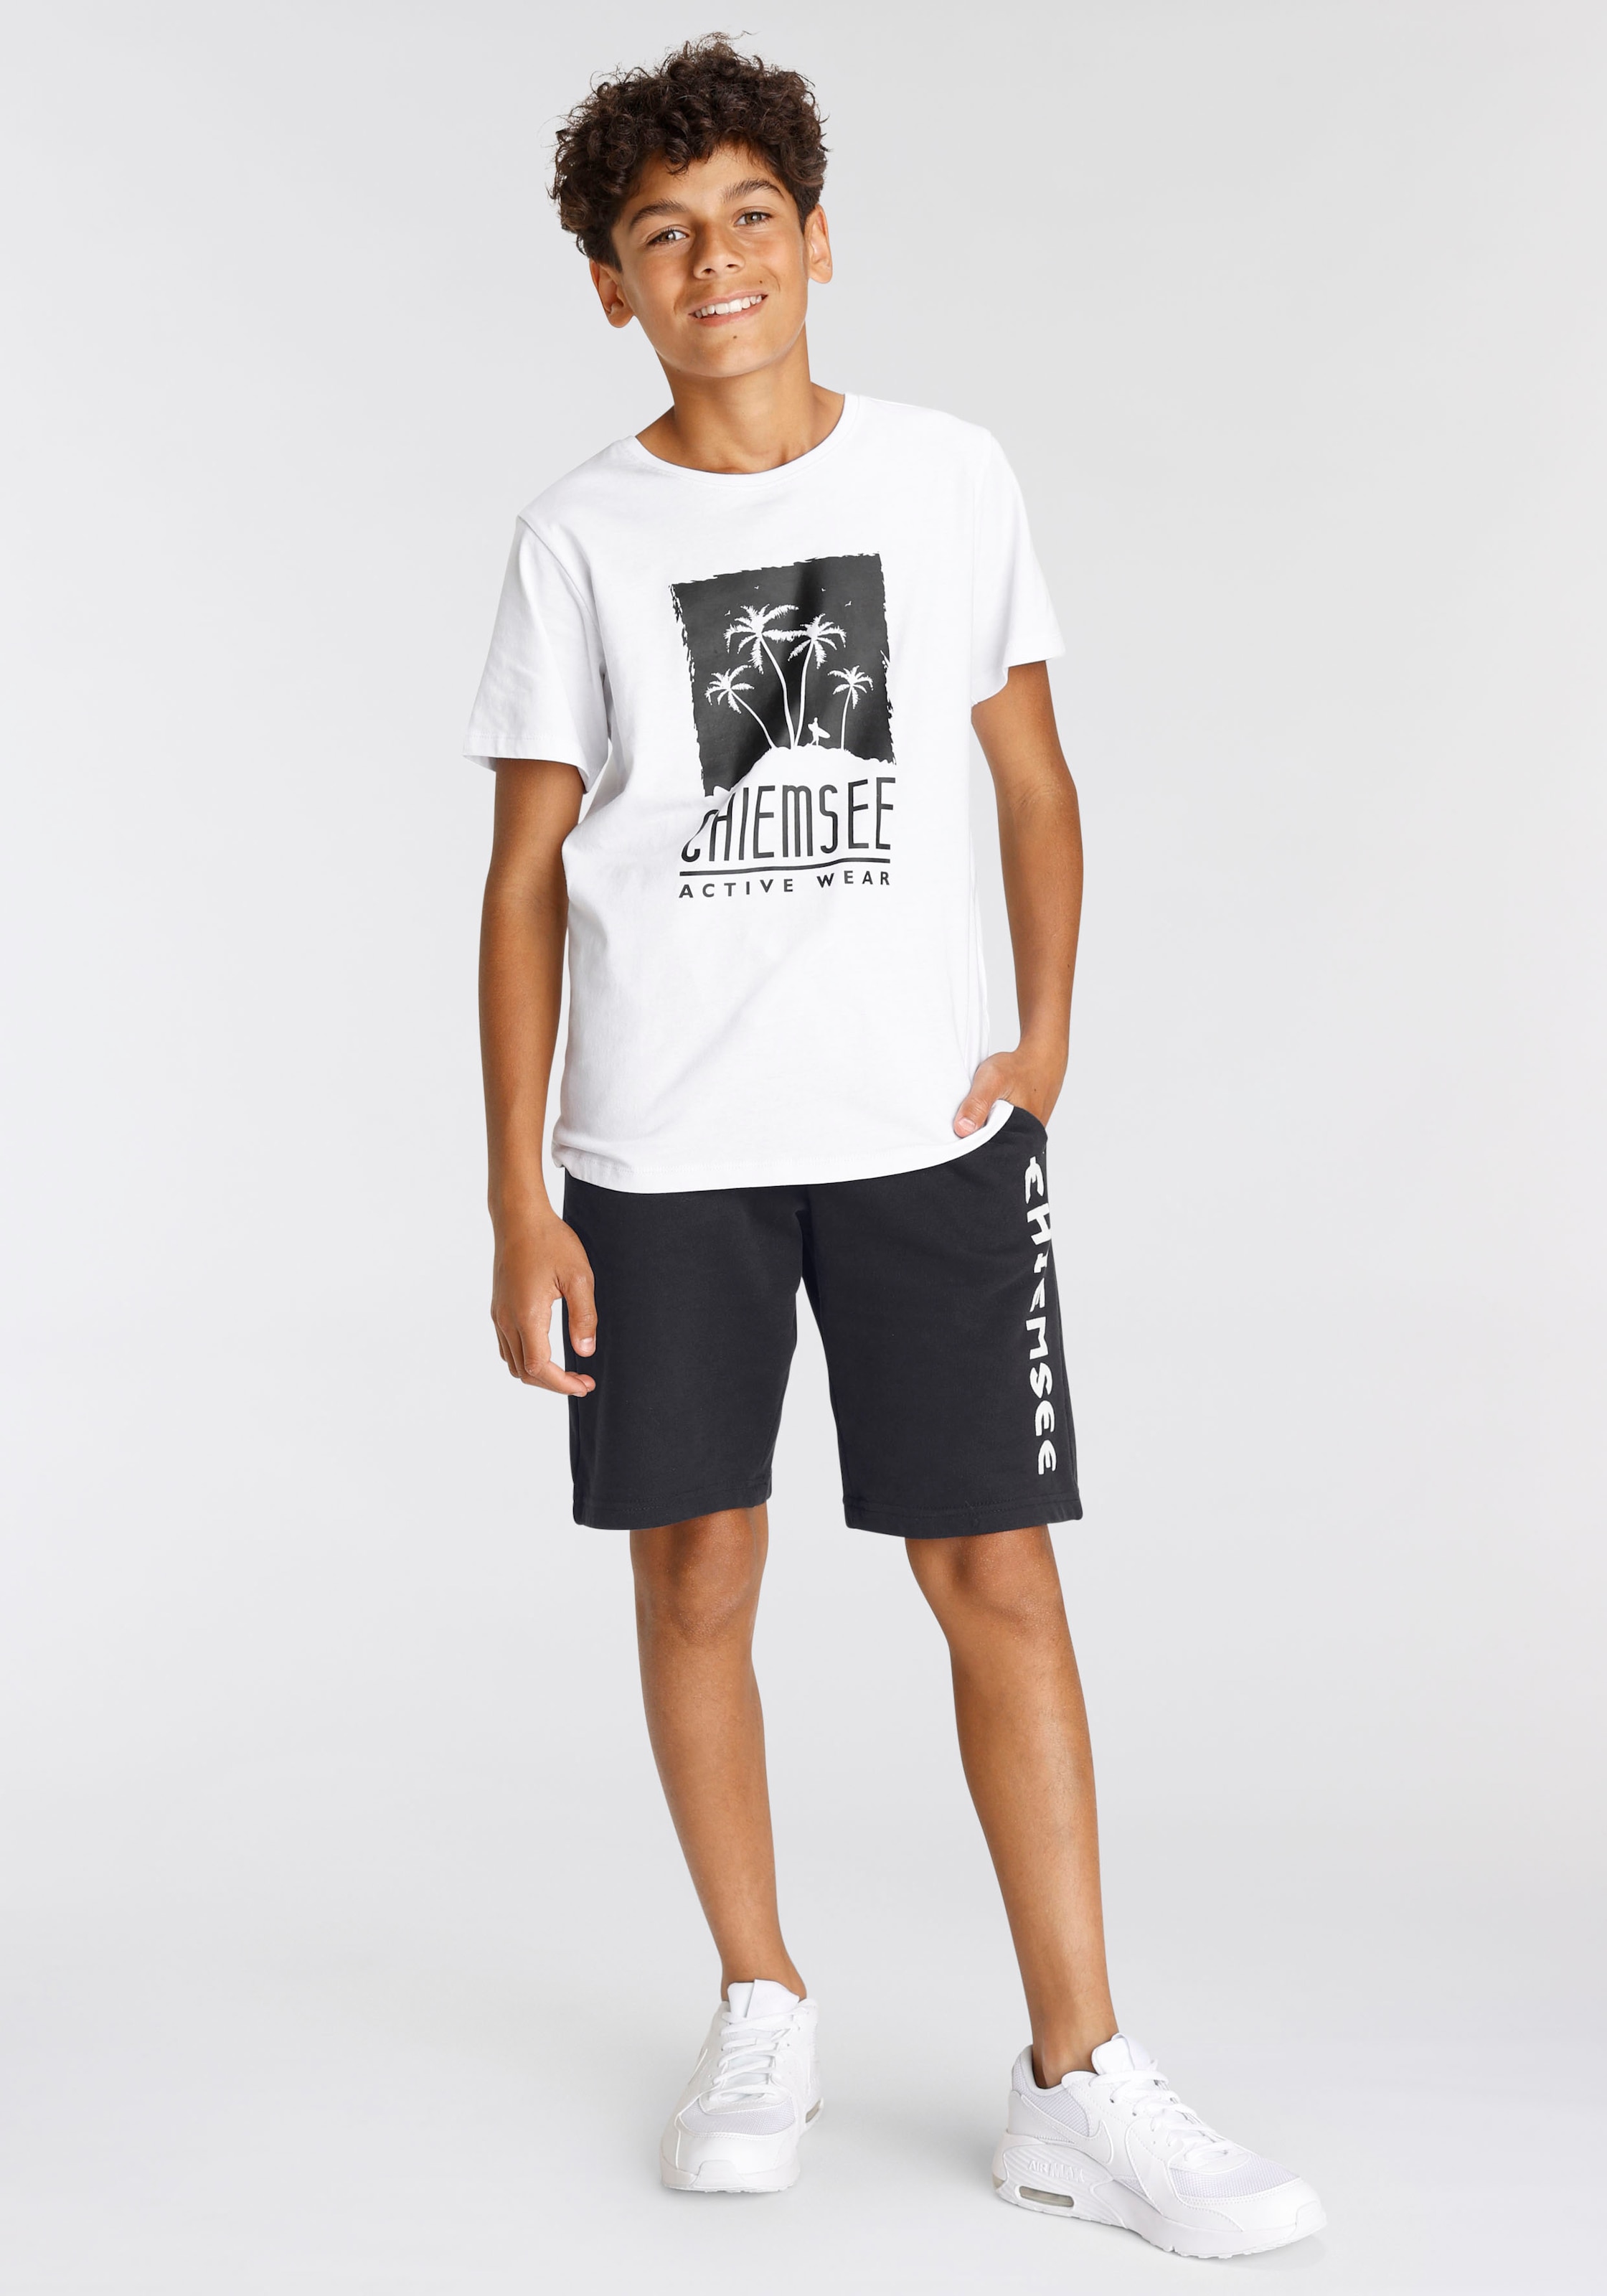 Chiemsee T-Shirt online kaufen | BAUR